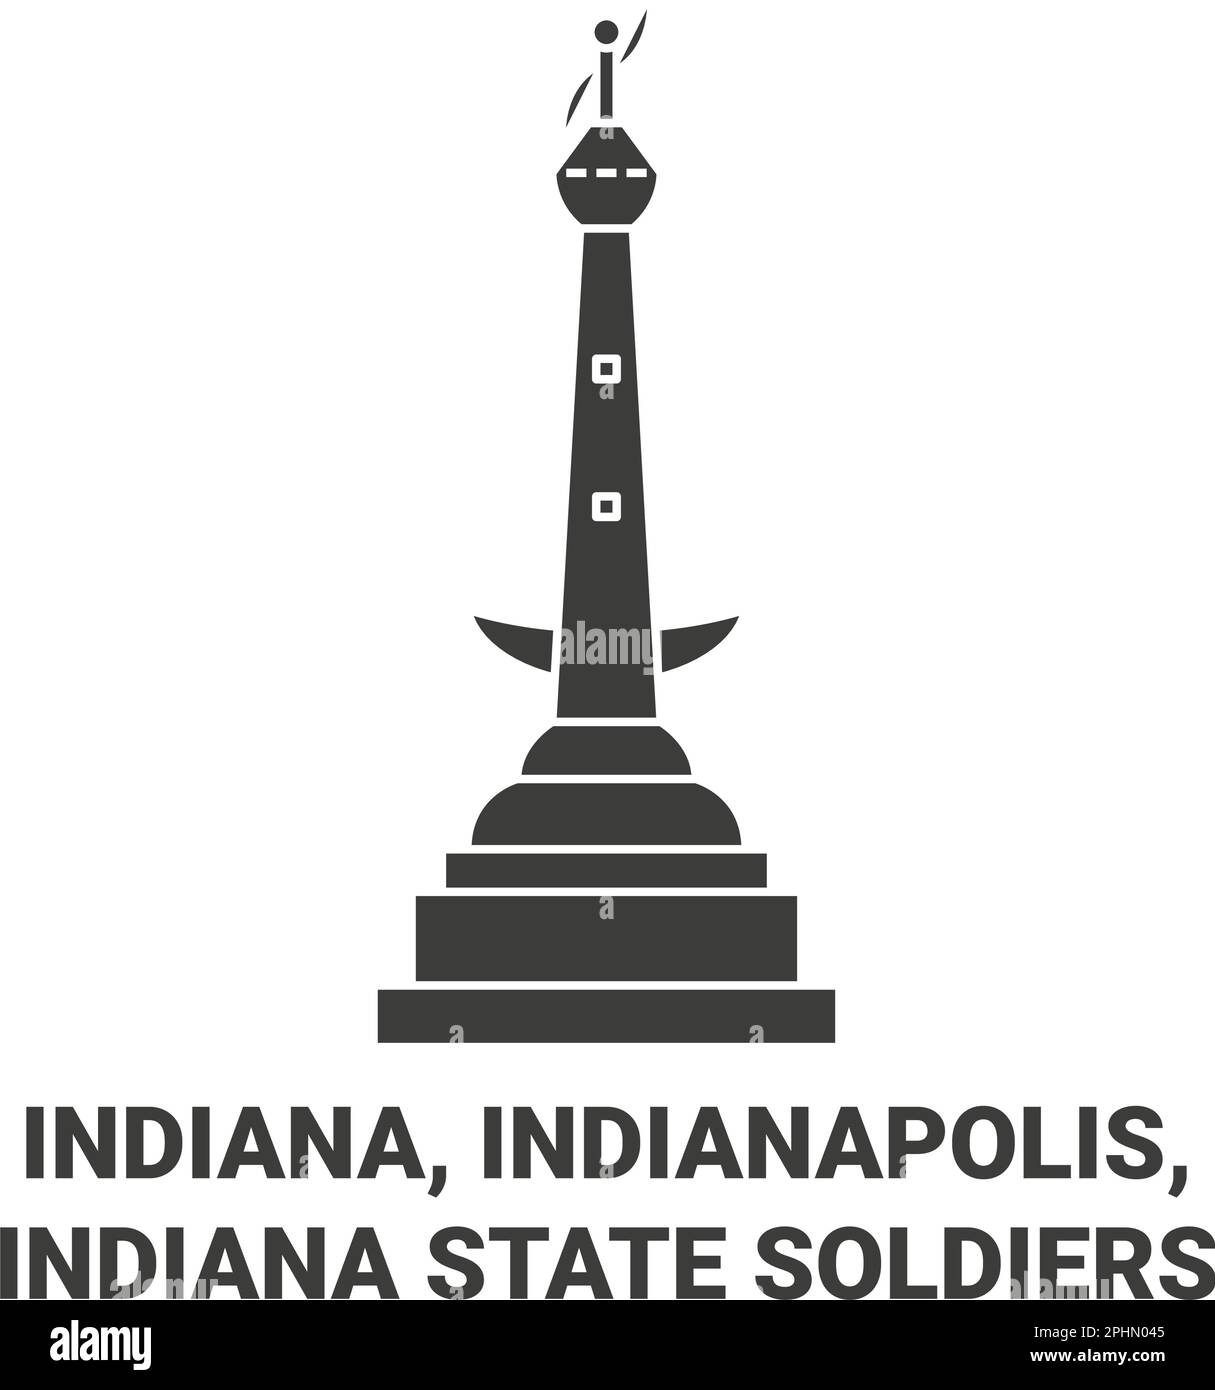 États-Unis, Indiana, Indianapolis, Indiana les soldats de l'État voyagent illustration vectorielle historique Illustration de Vecteur